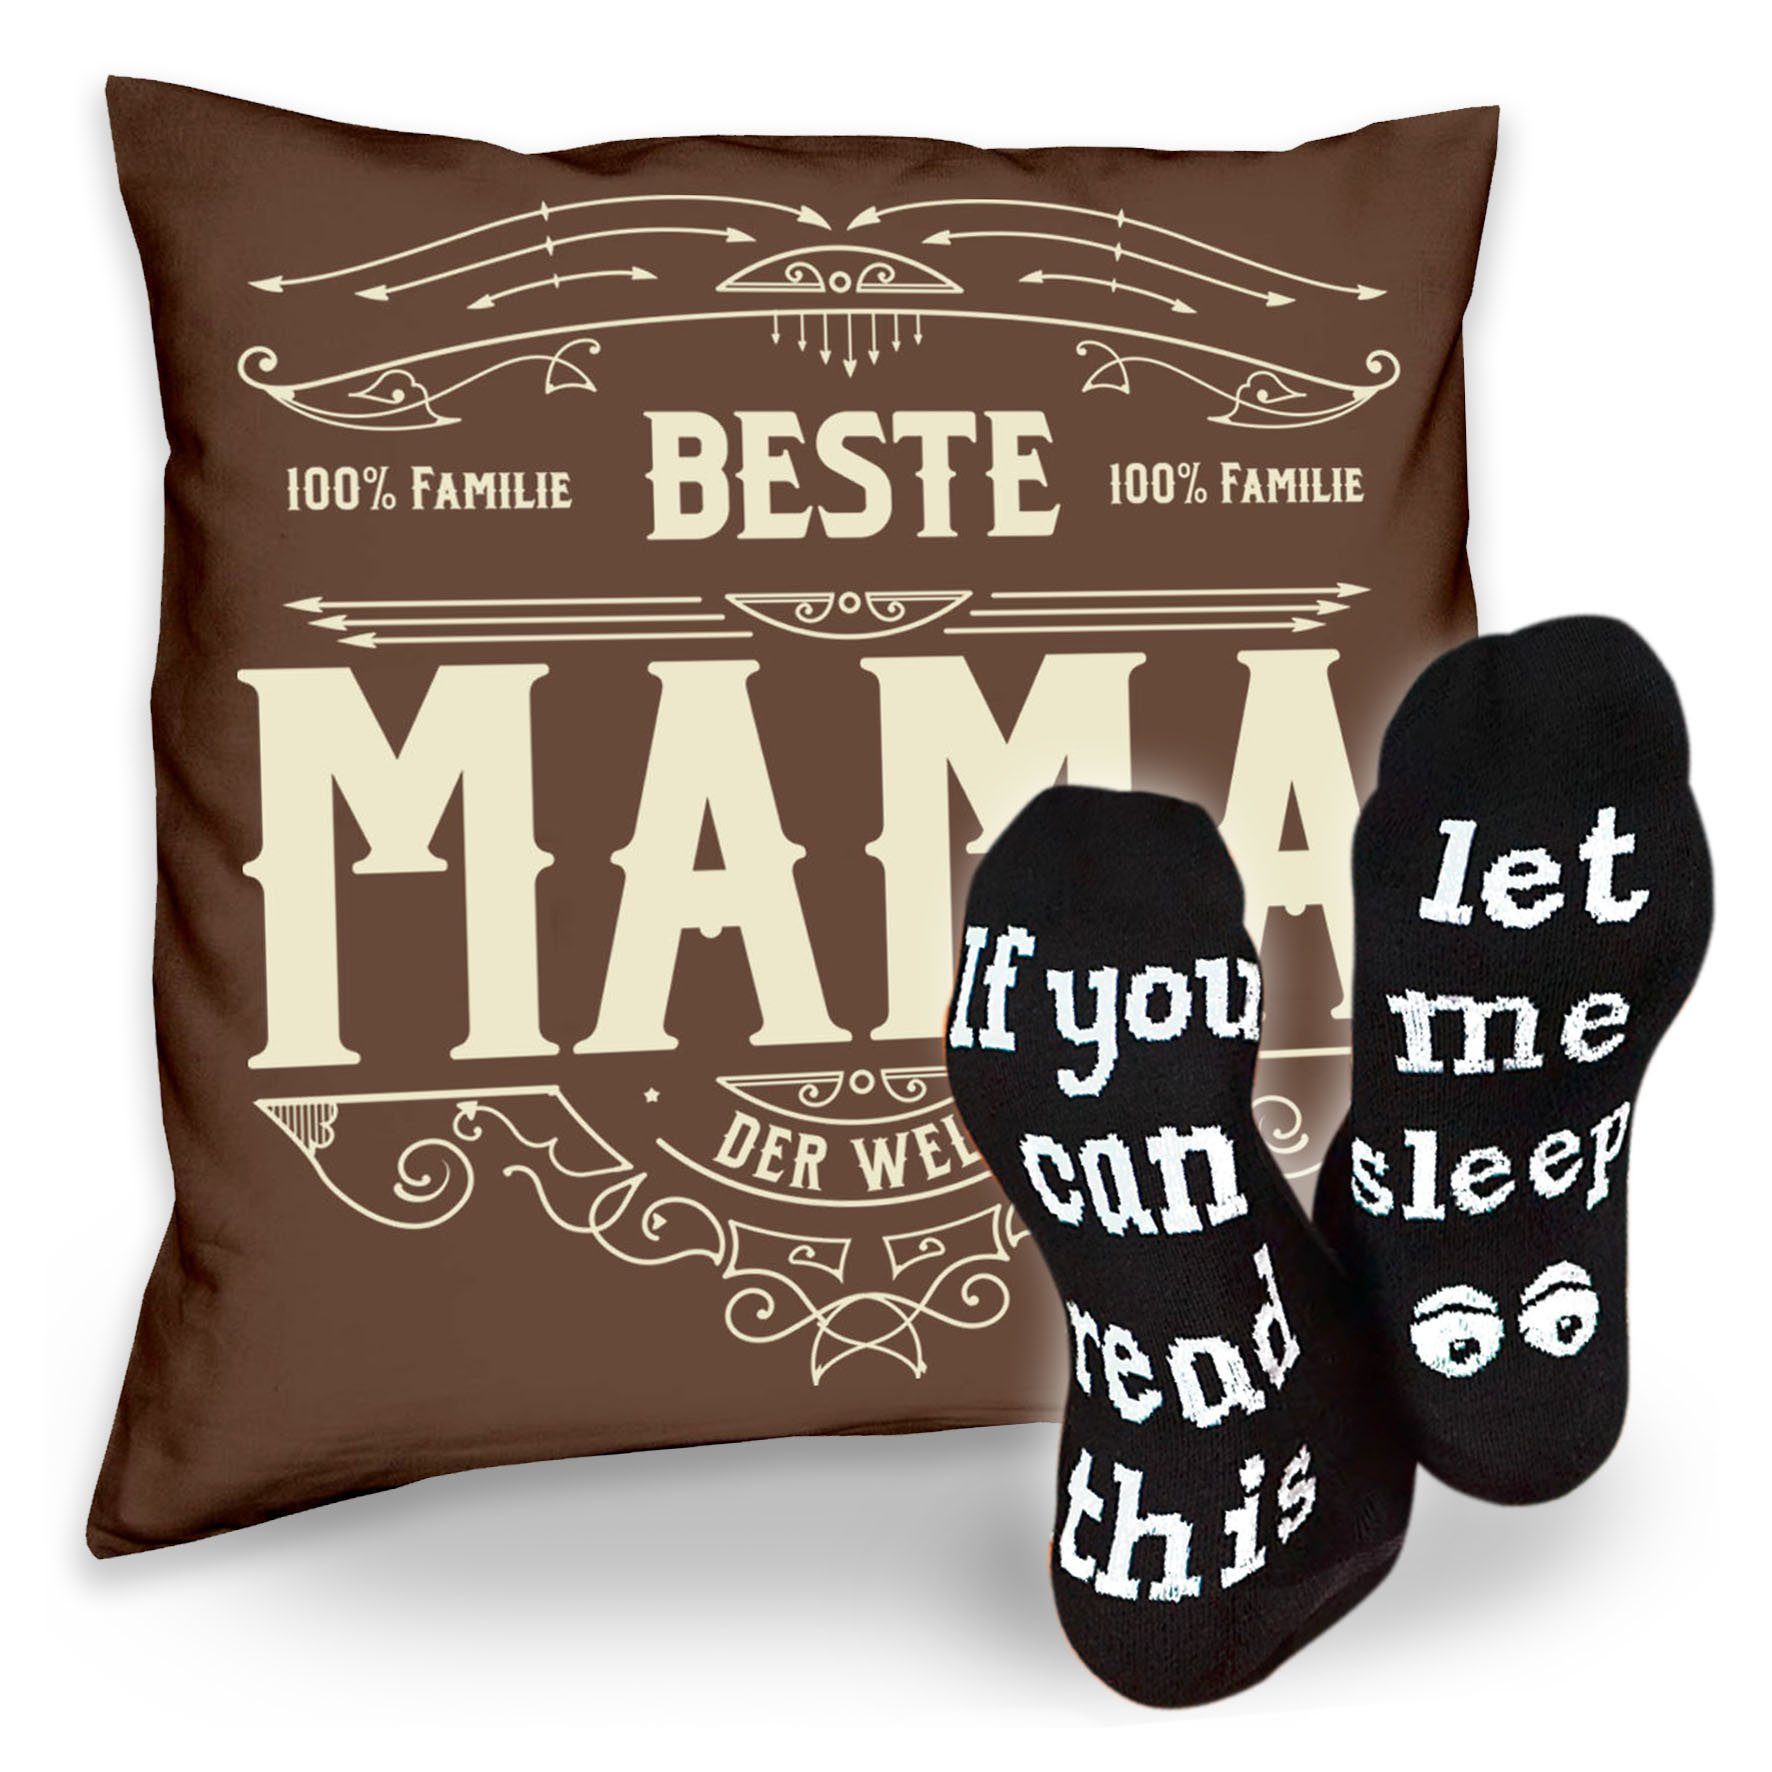 Soreso® Dekokissen Kissen Beste Mama & Sprüche Socken Sleep, Muttertagsgeschenk Mama Muttertag braun